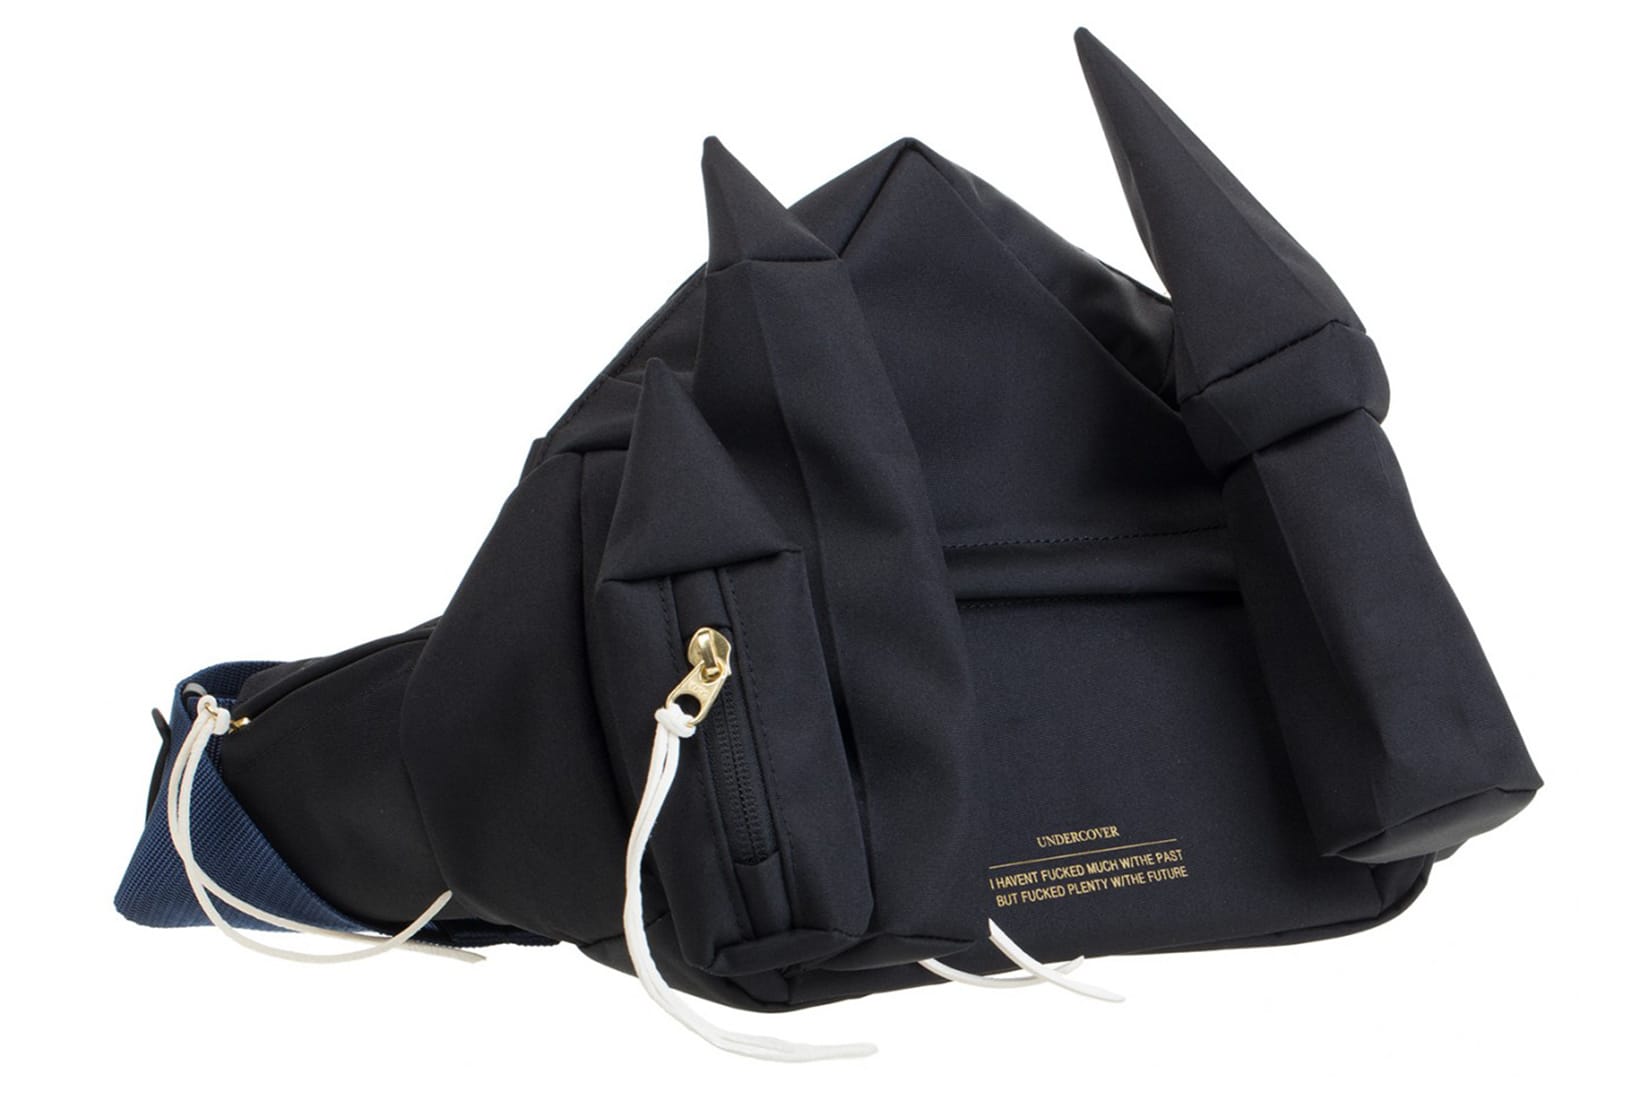 Undercover waist pack bum bag waist bag | Hypebeast